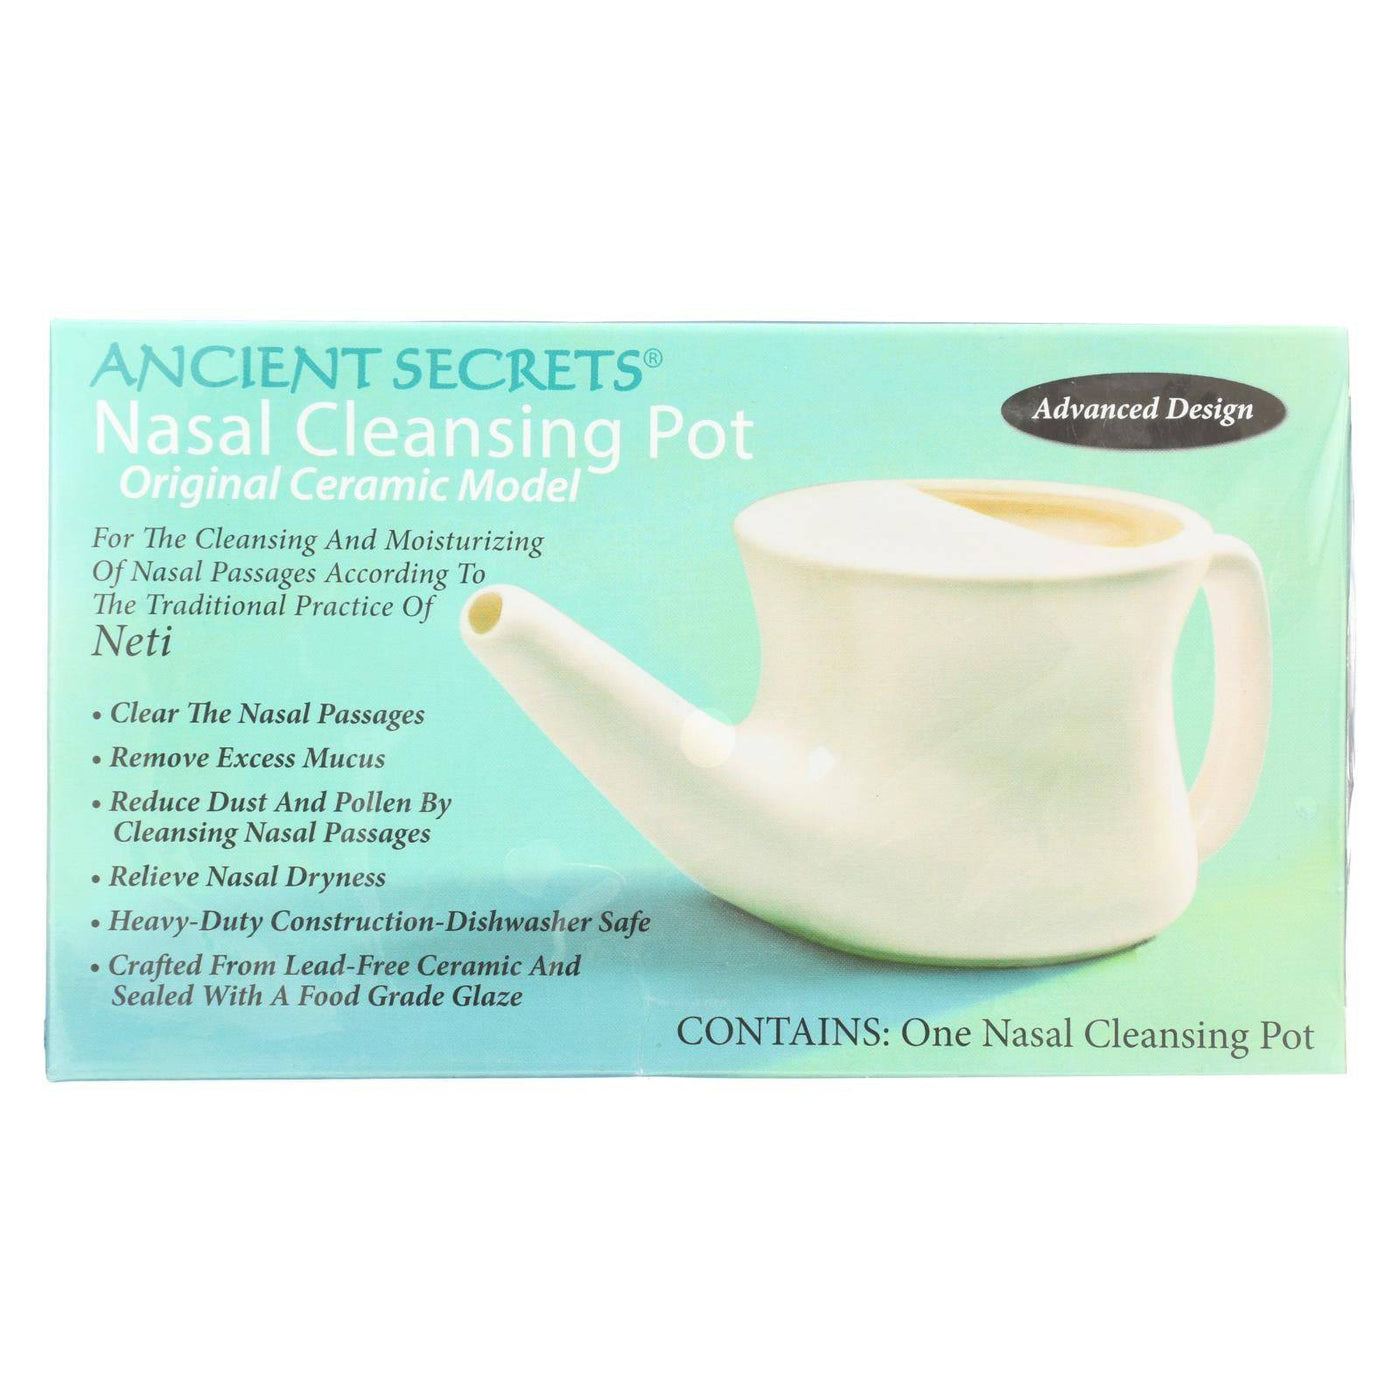 Buy Ancient Secrets Ancient Secrets Nasal Cleansing Pot - 1 Pot  at OnlyNaturals.us